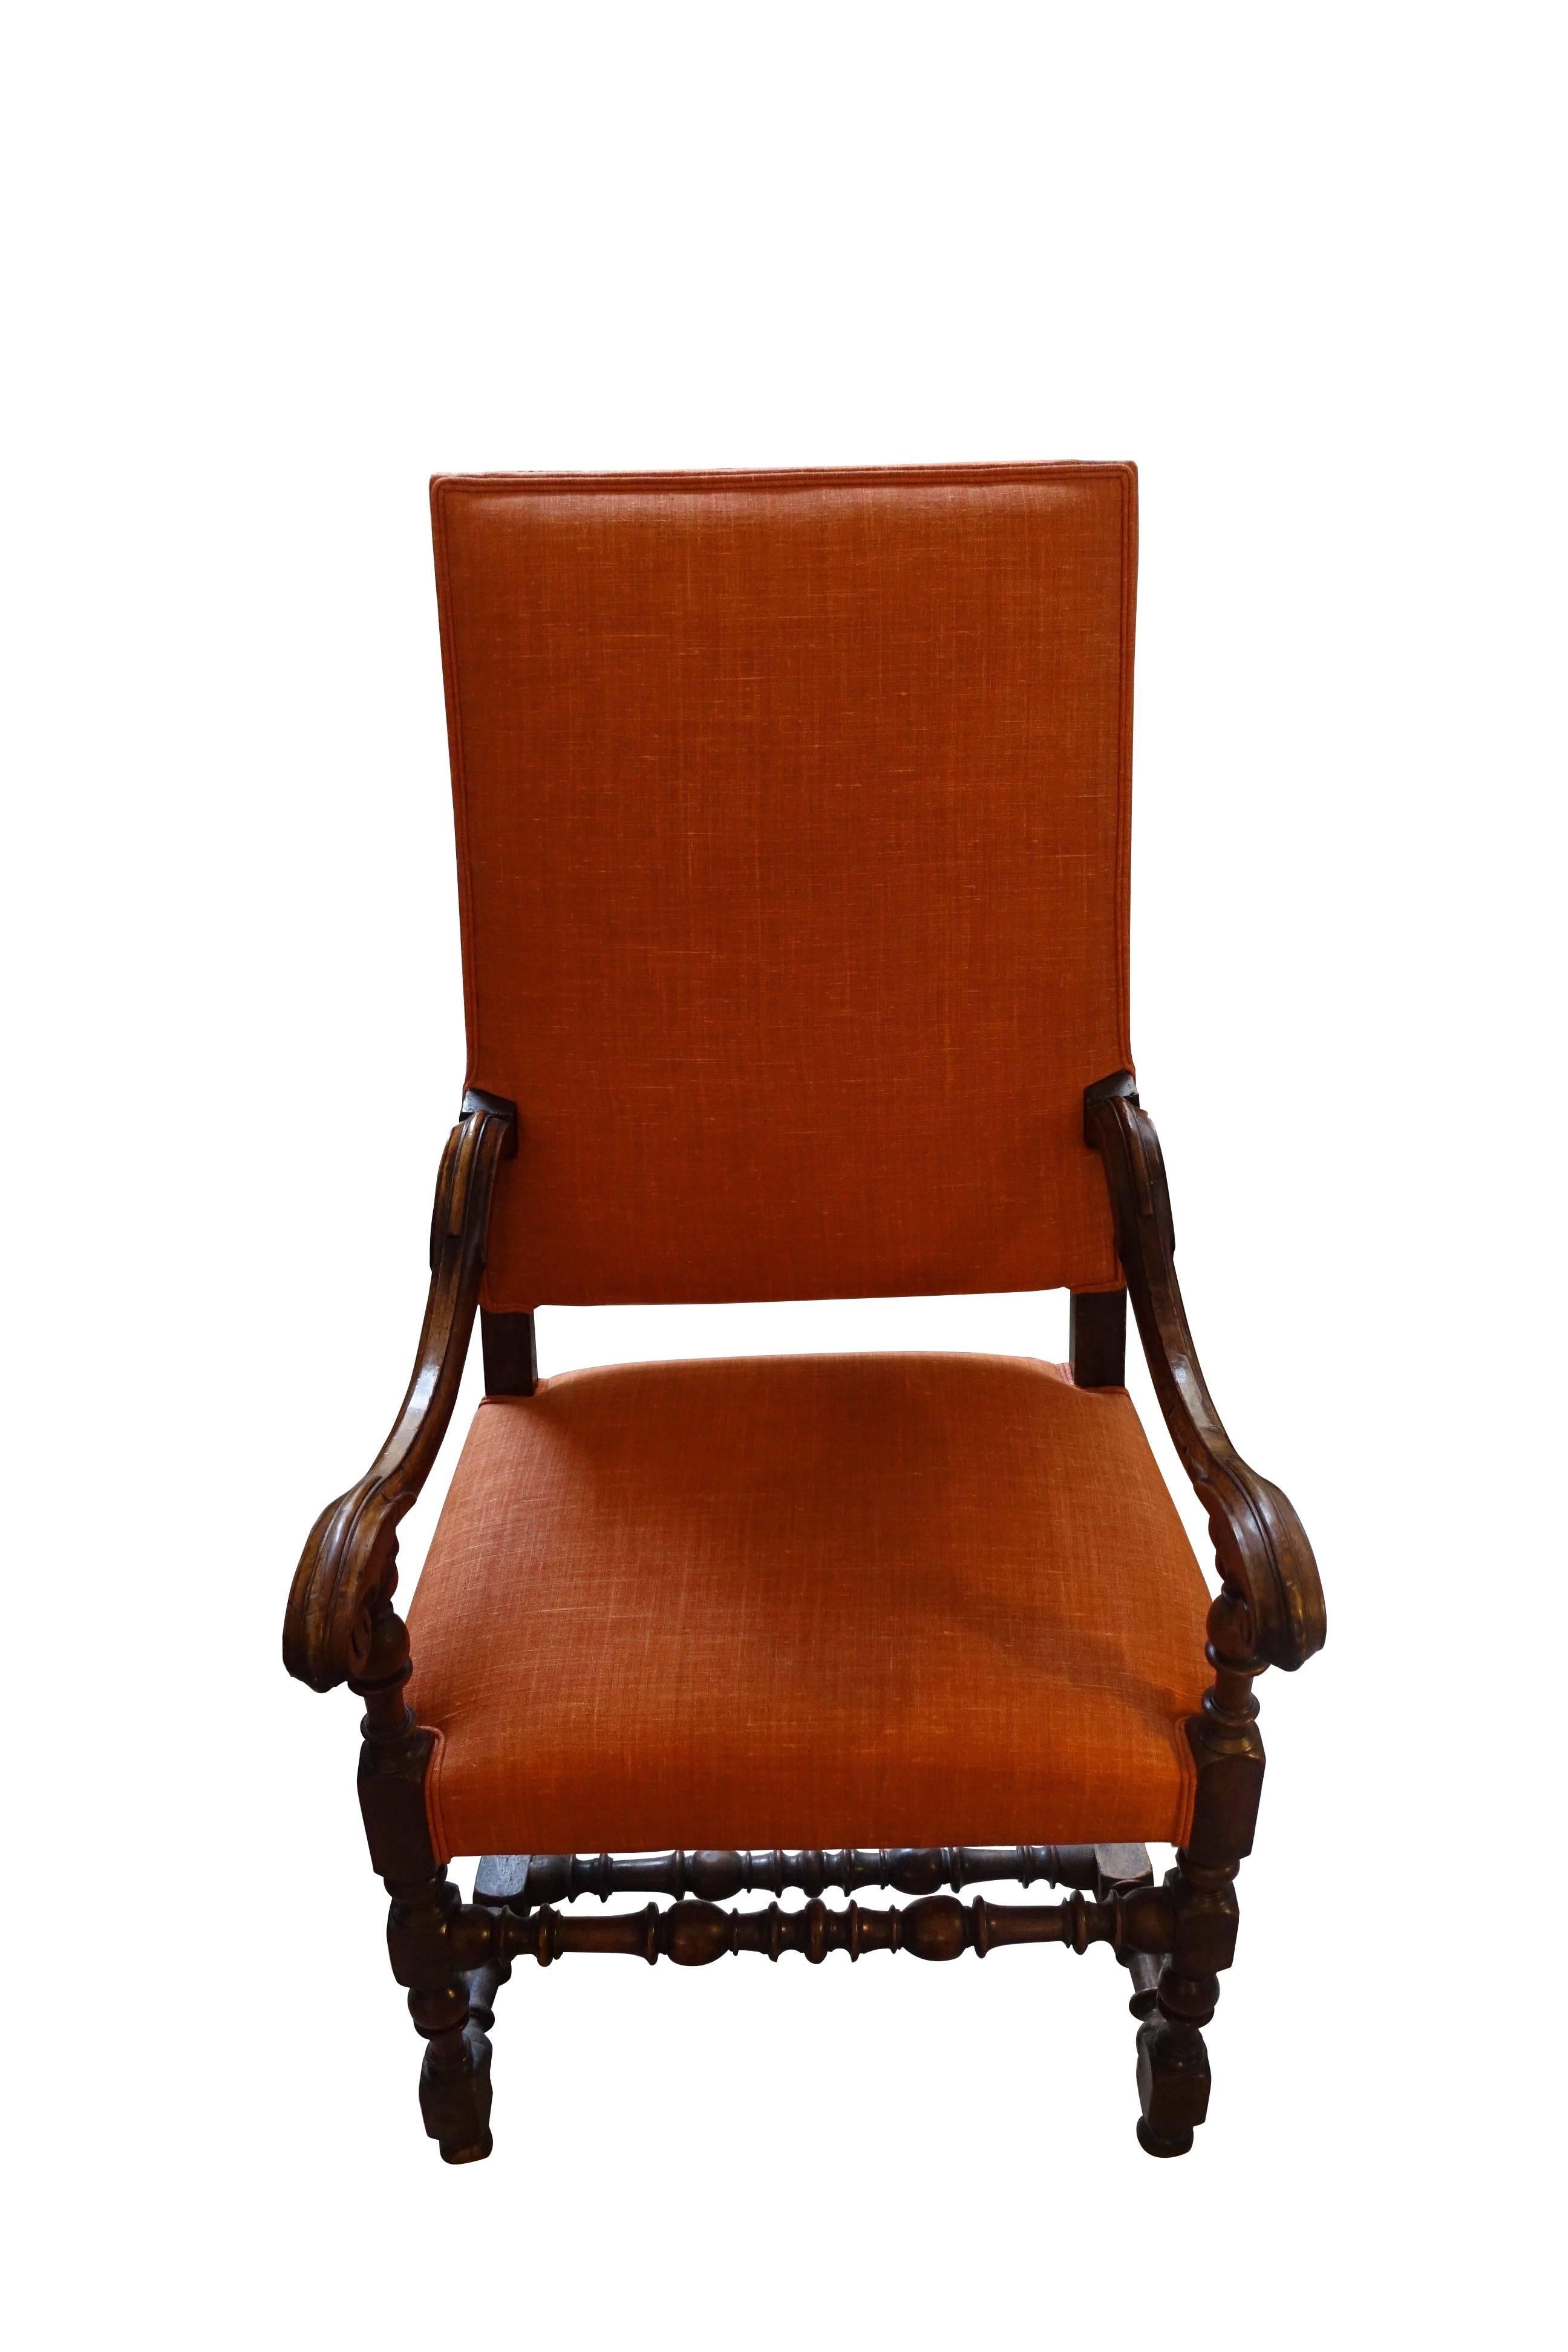 Italienisches Paar klassisch gestalteter Sessel mit Nussbaumholzrahmen aus dem 18. Jahrhundert.
Der orangefarbene Bezug aus belgischem Leinen verleiht dem klassisch gestalteten Gestell einen einzigartigen Look.
Schön geschnitzt Scroll Arm und